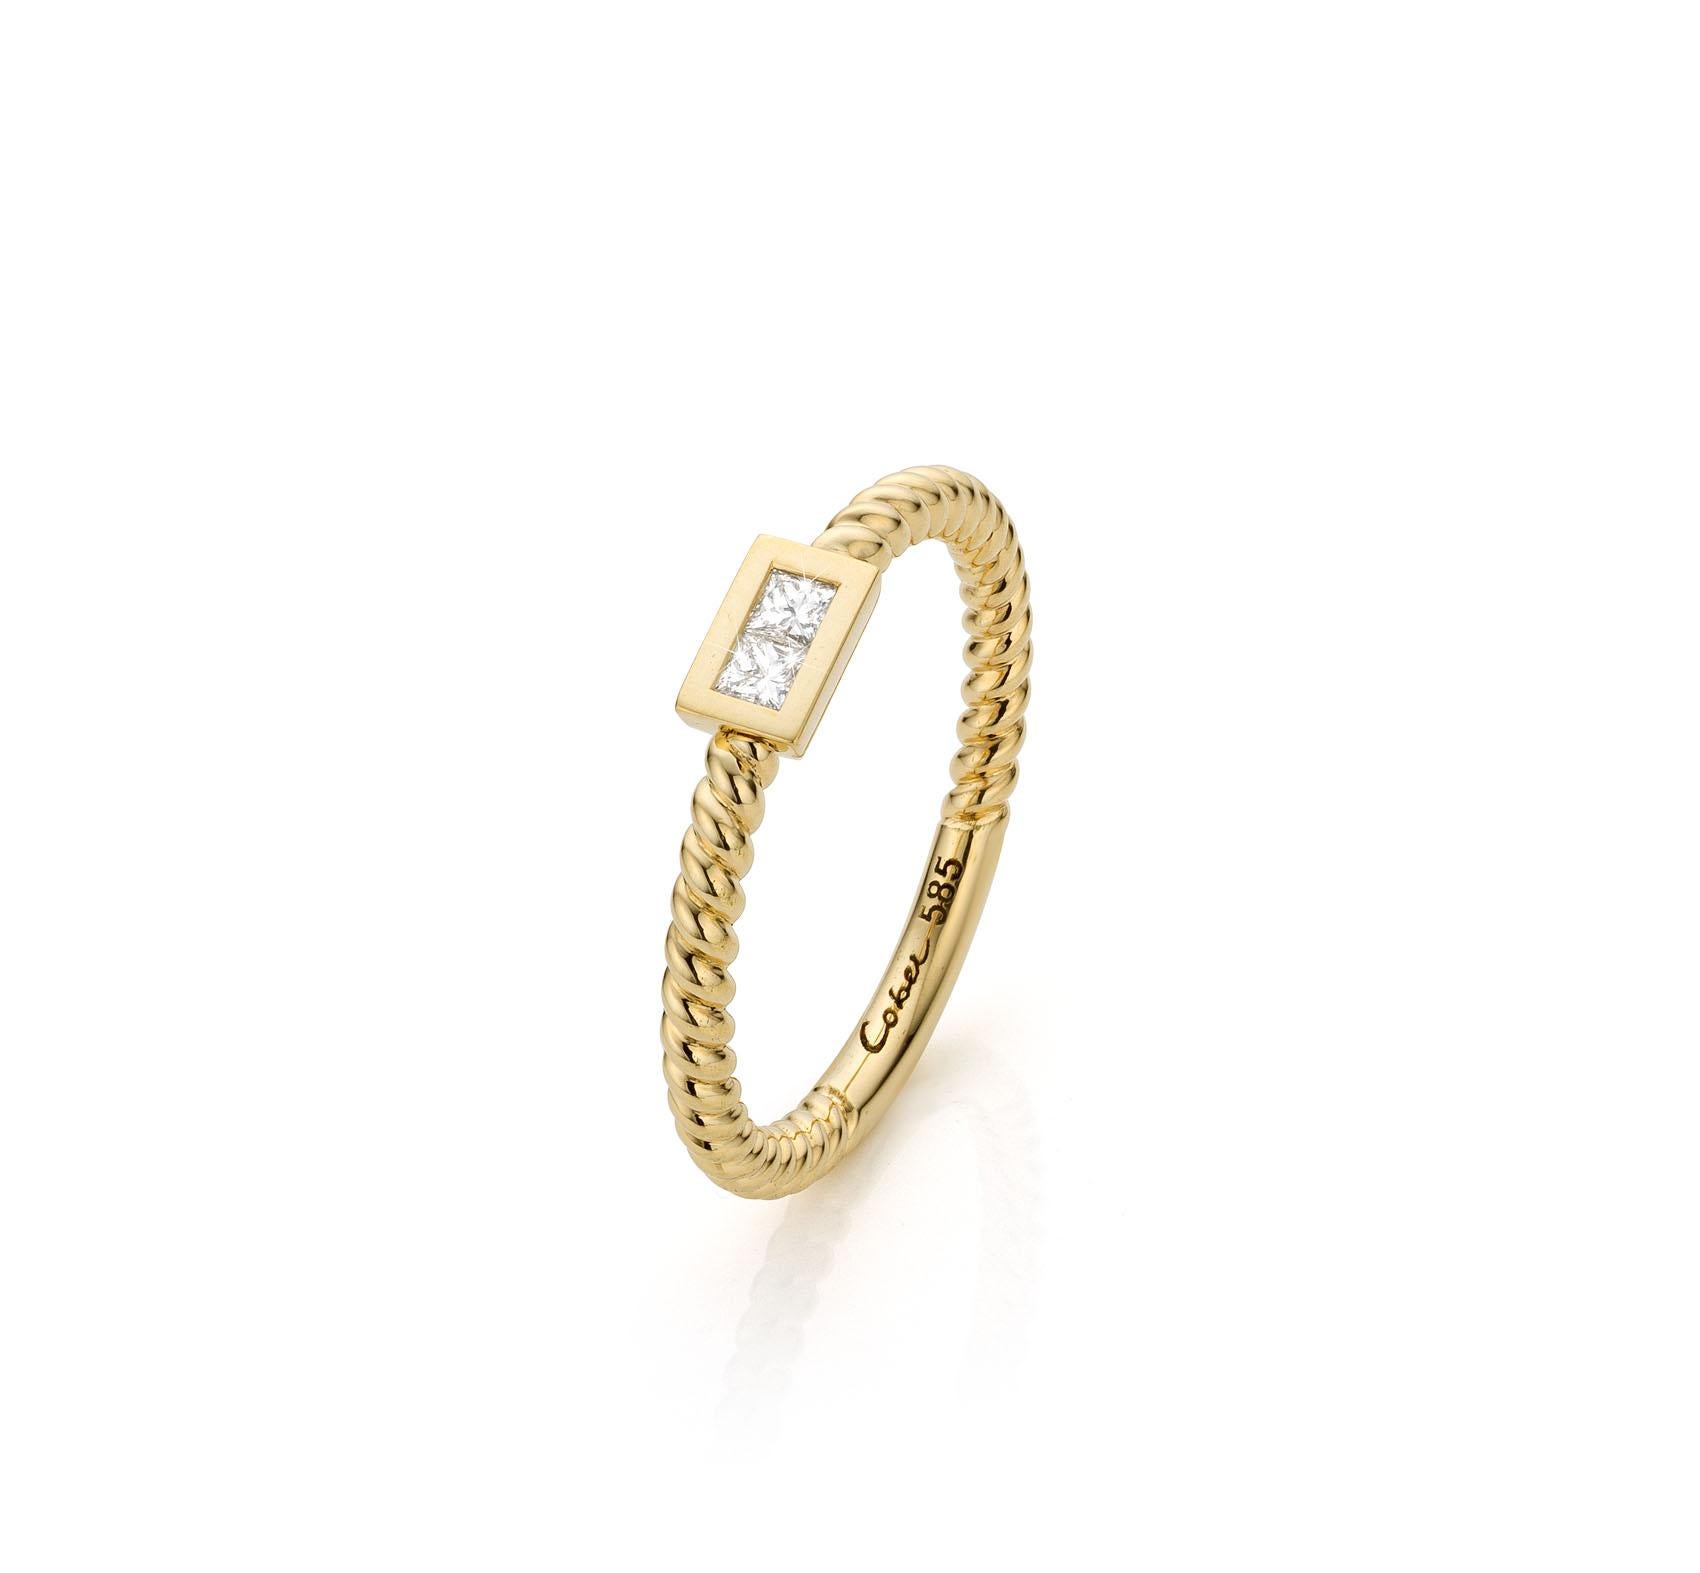 For Sale:   Cober Ibiza “Princess” set with Diamonds Made of 14 Carat fairtrade Gold Ring 5